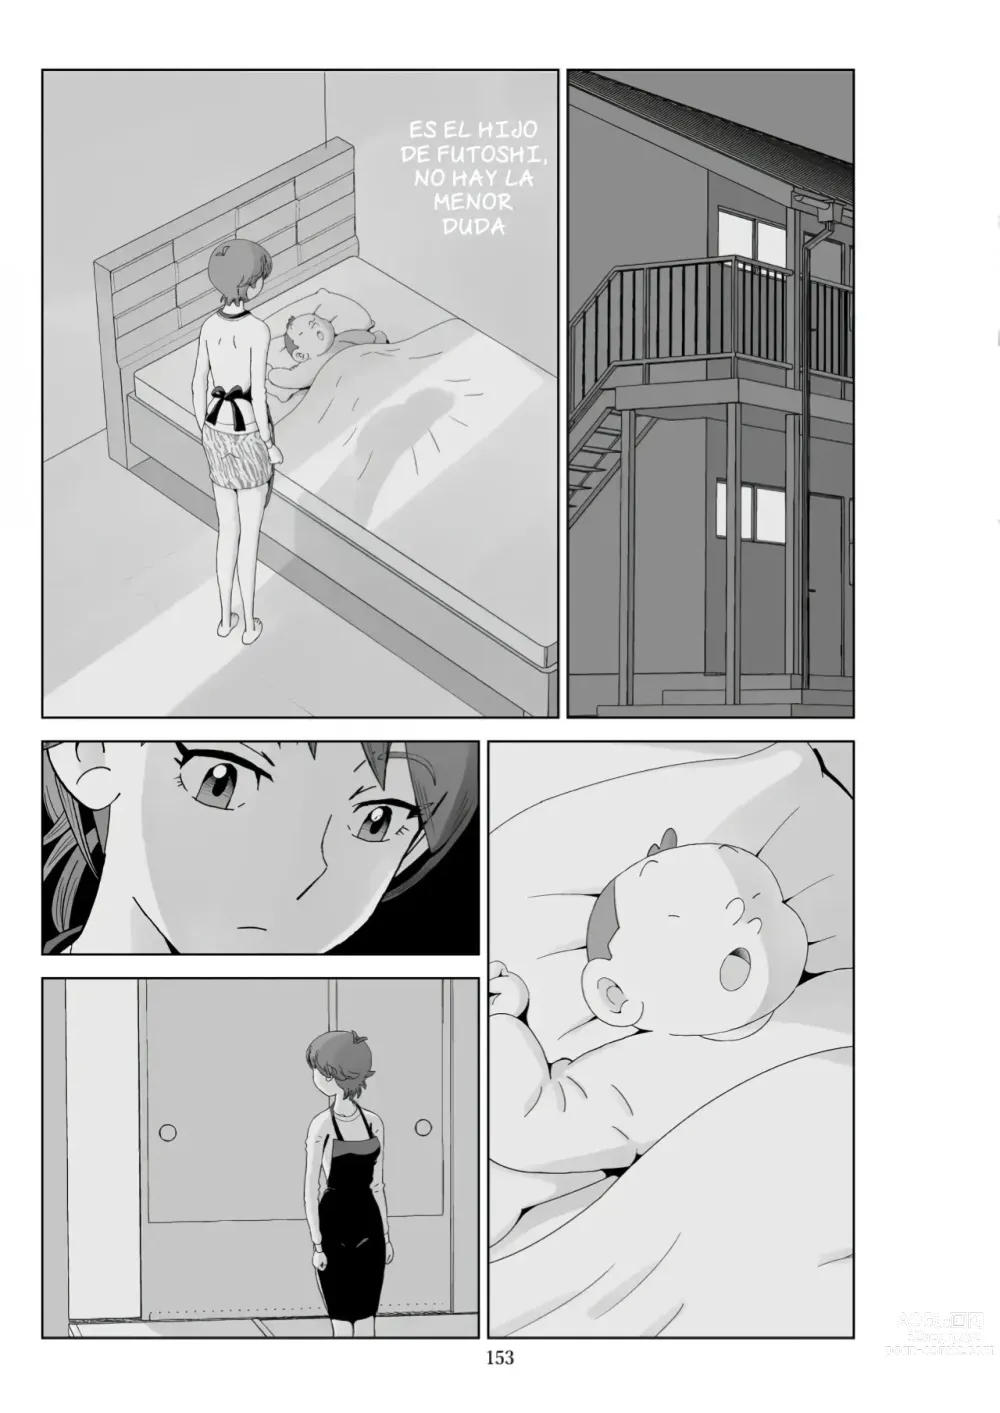 Page 391 of doujinshi Futoshi 1-3